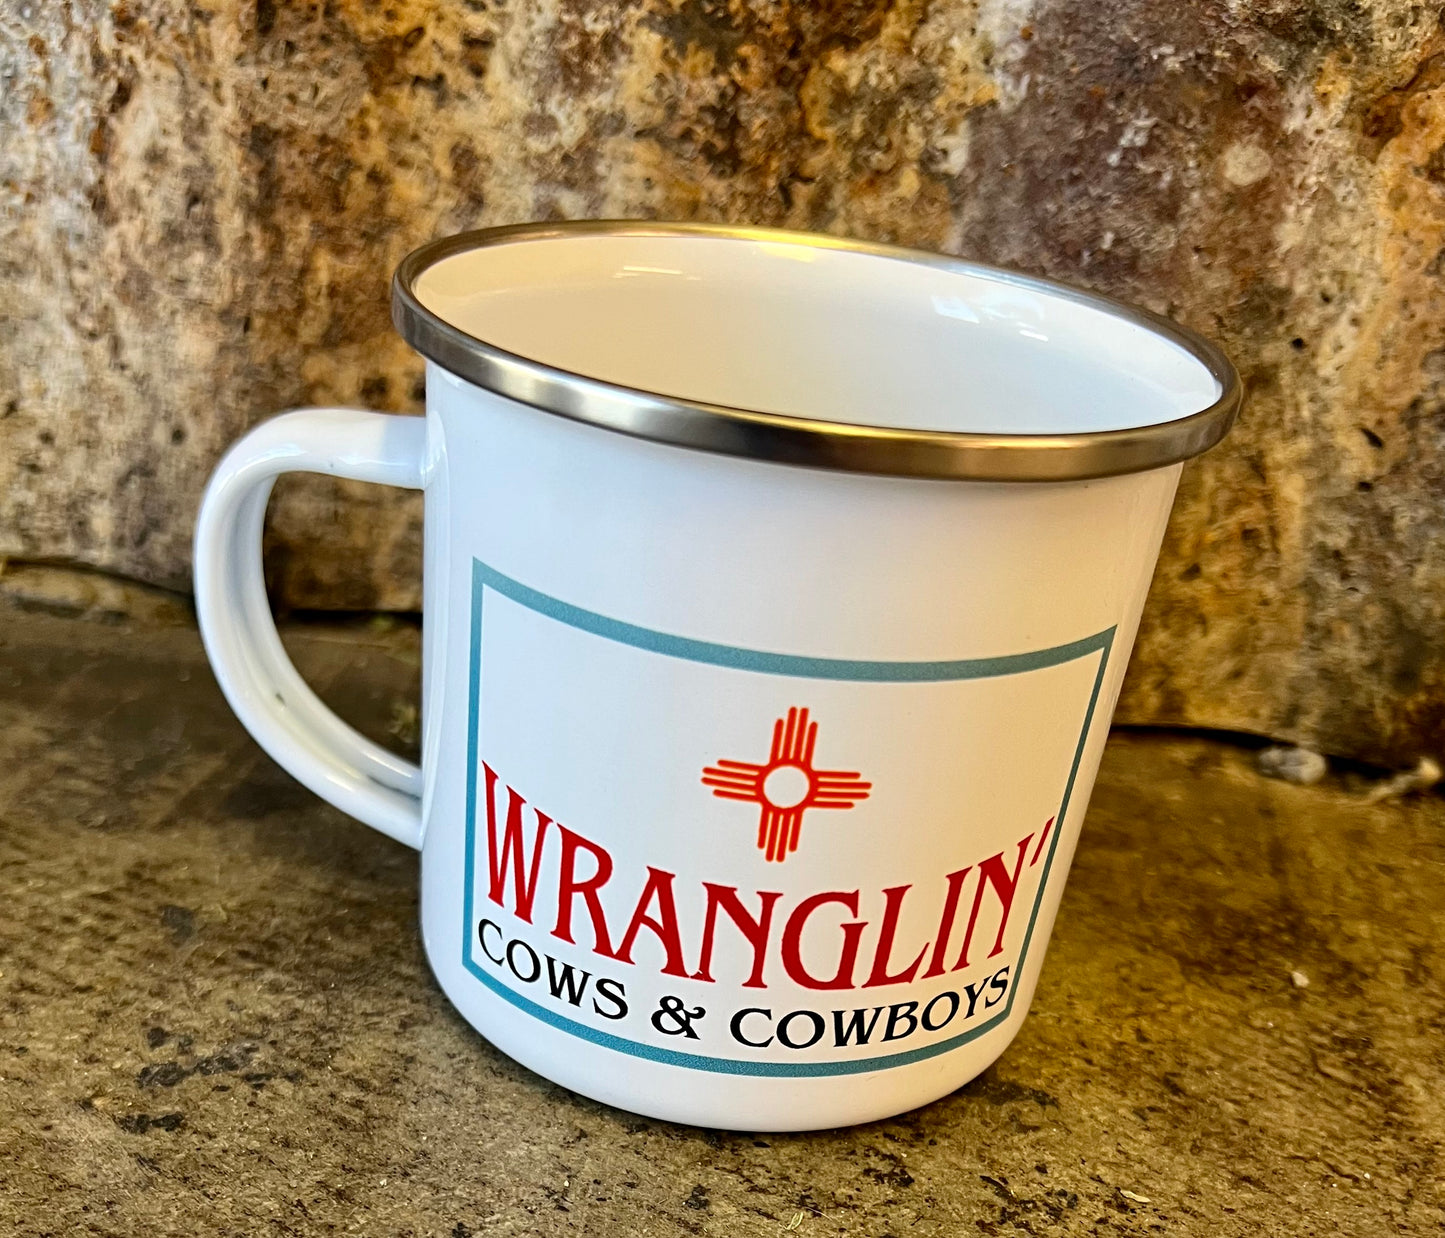 Wranglin’ mug